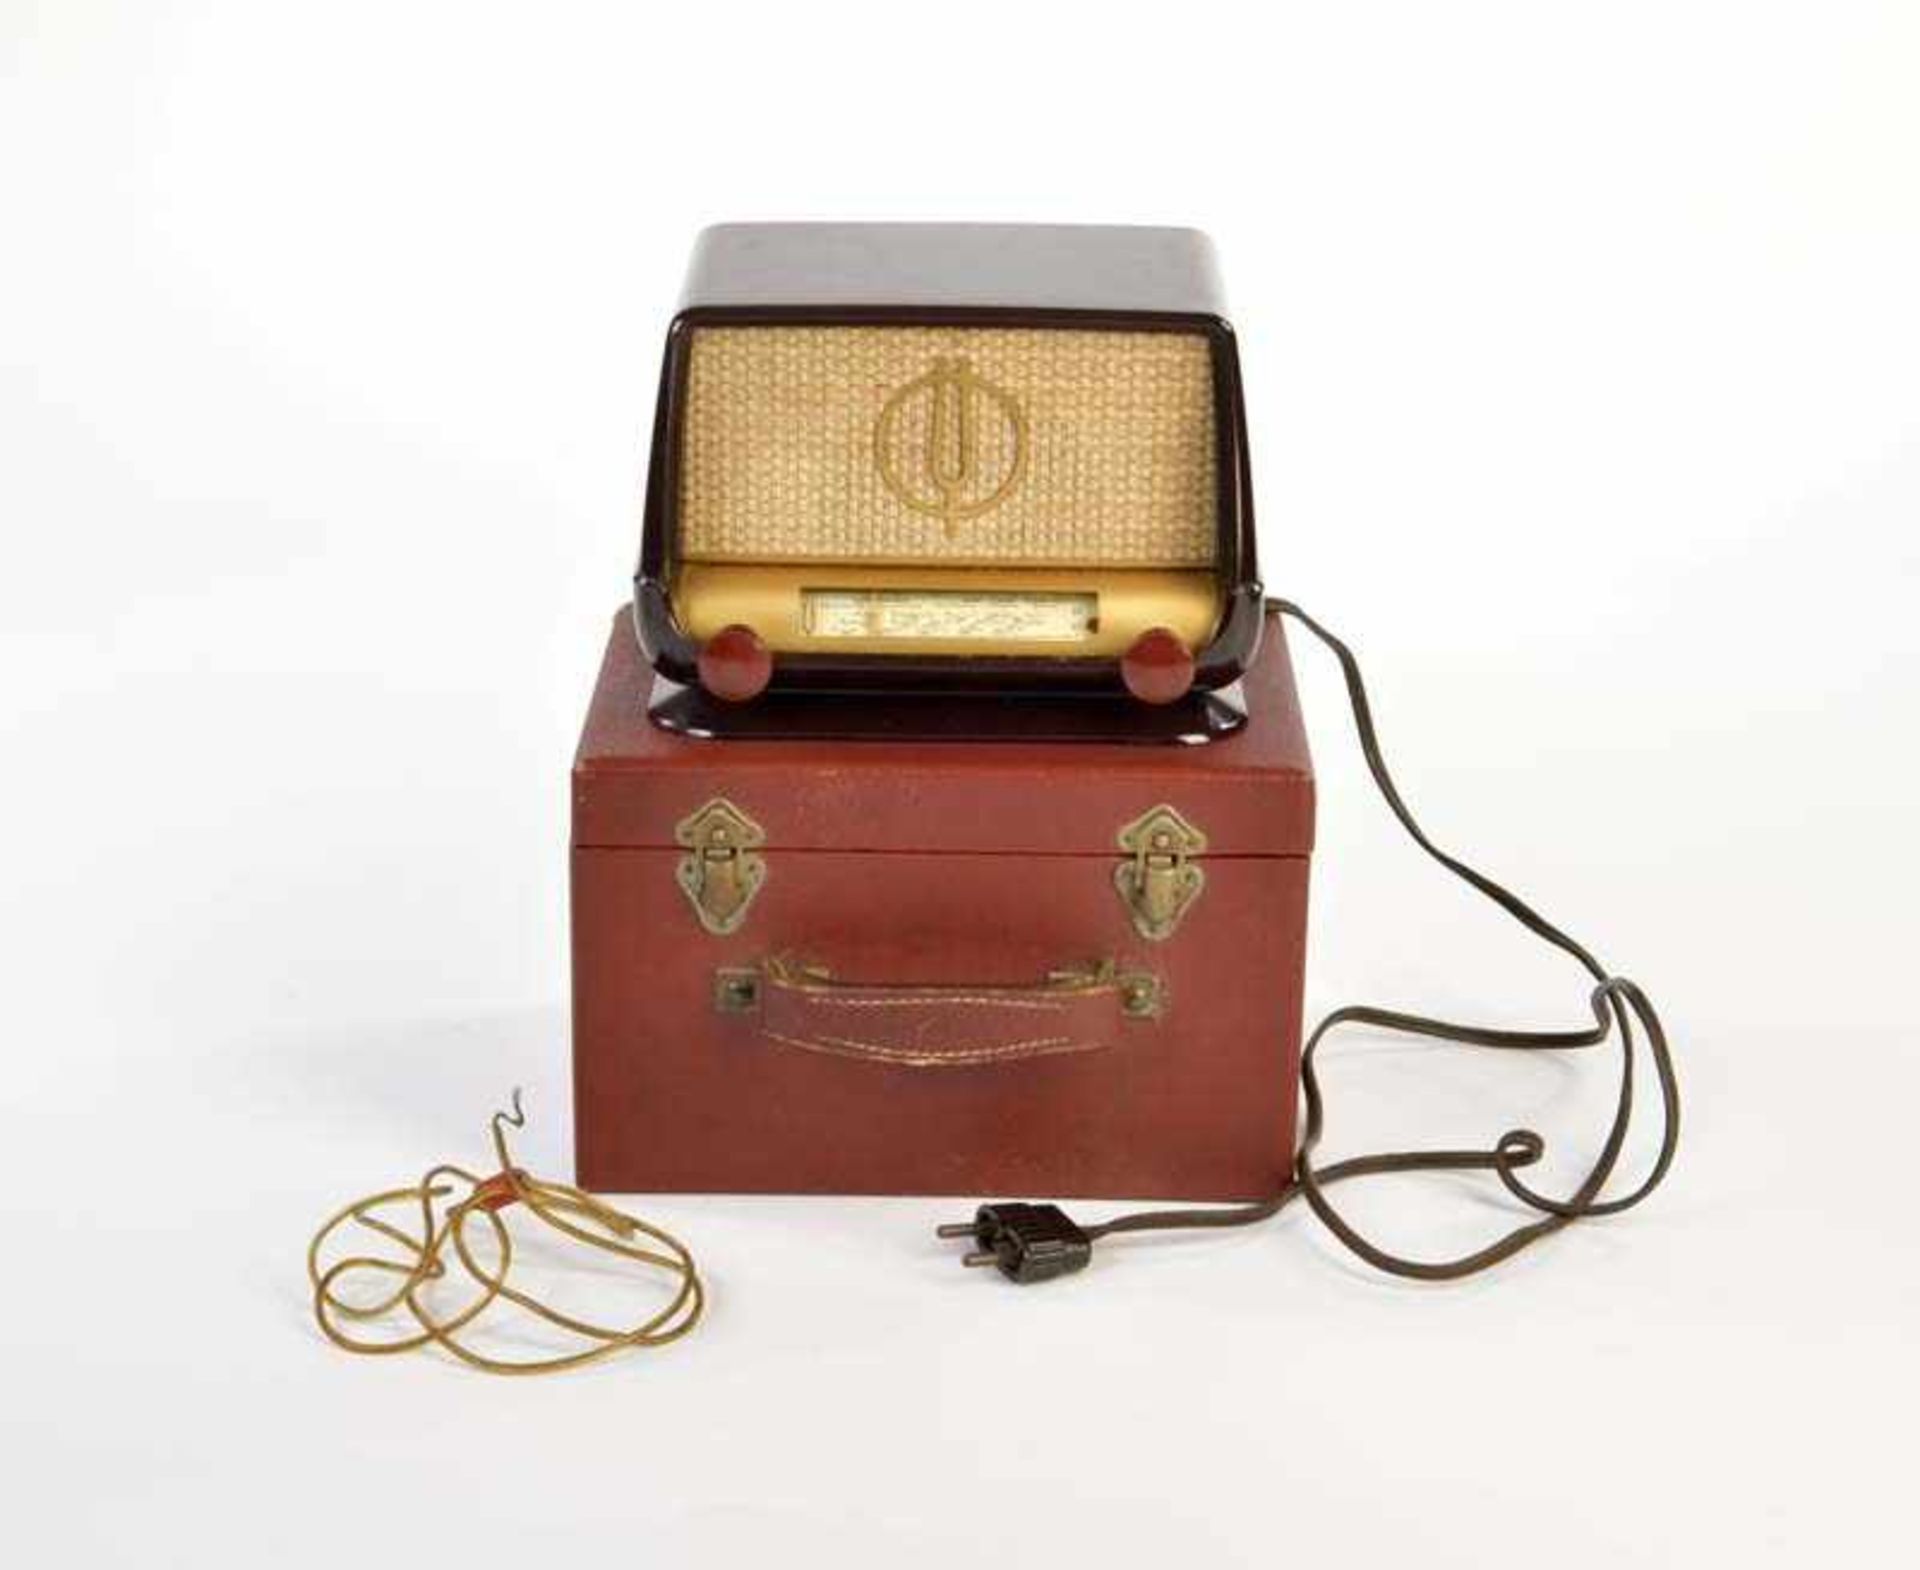 Ducretet Thomson, Bakelit Radio, 18,5 cm, Funktion nicht geprüft, in Holzkiste, sehr